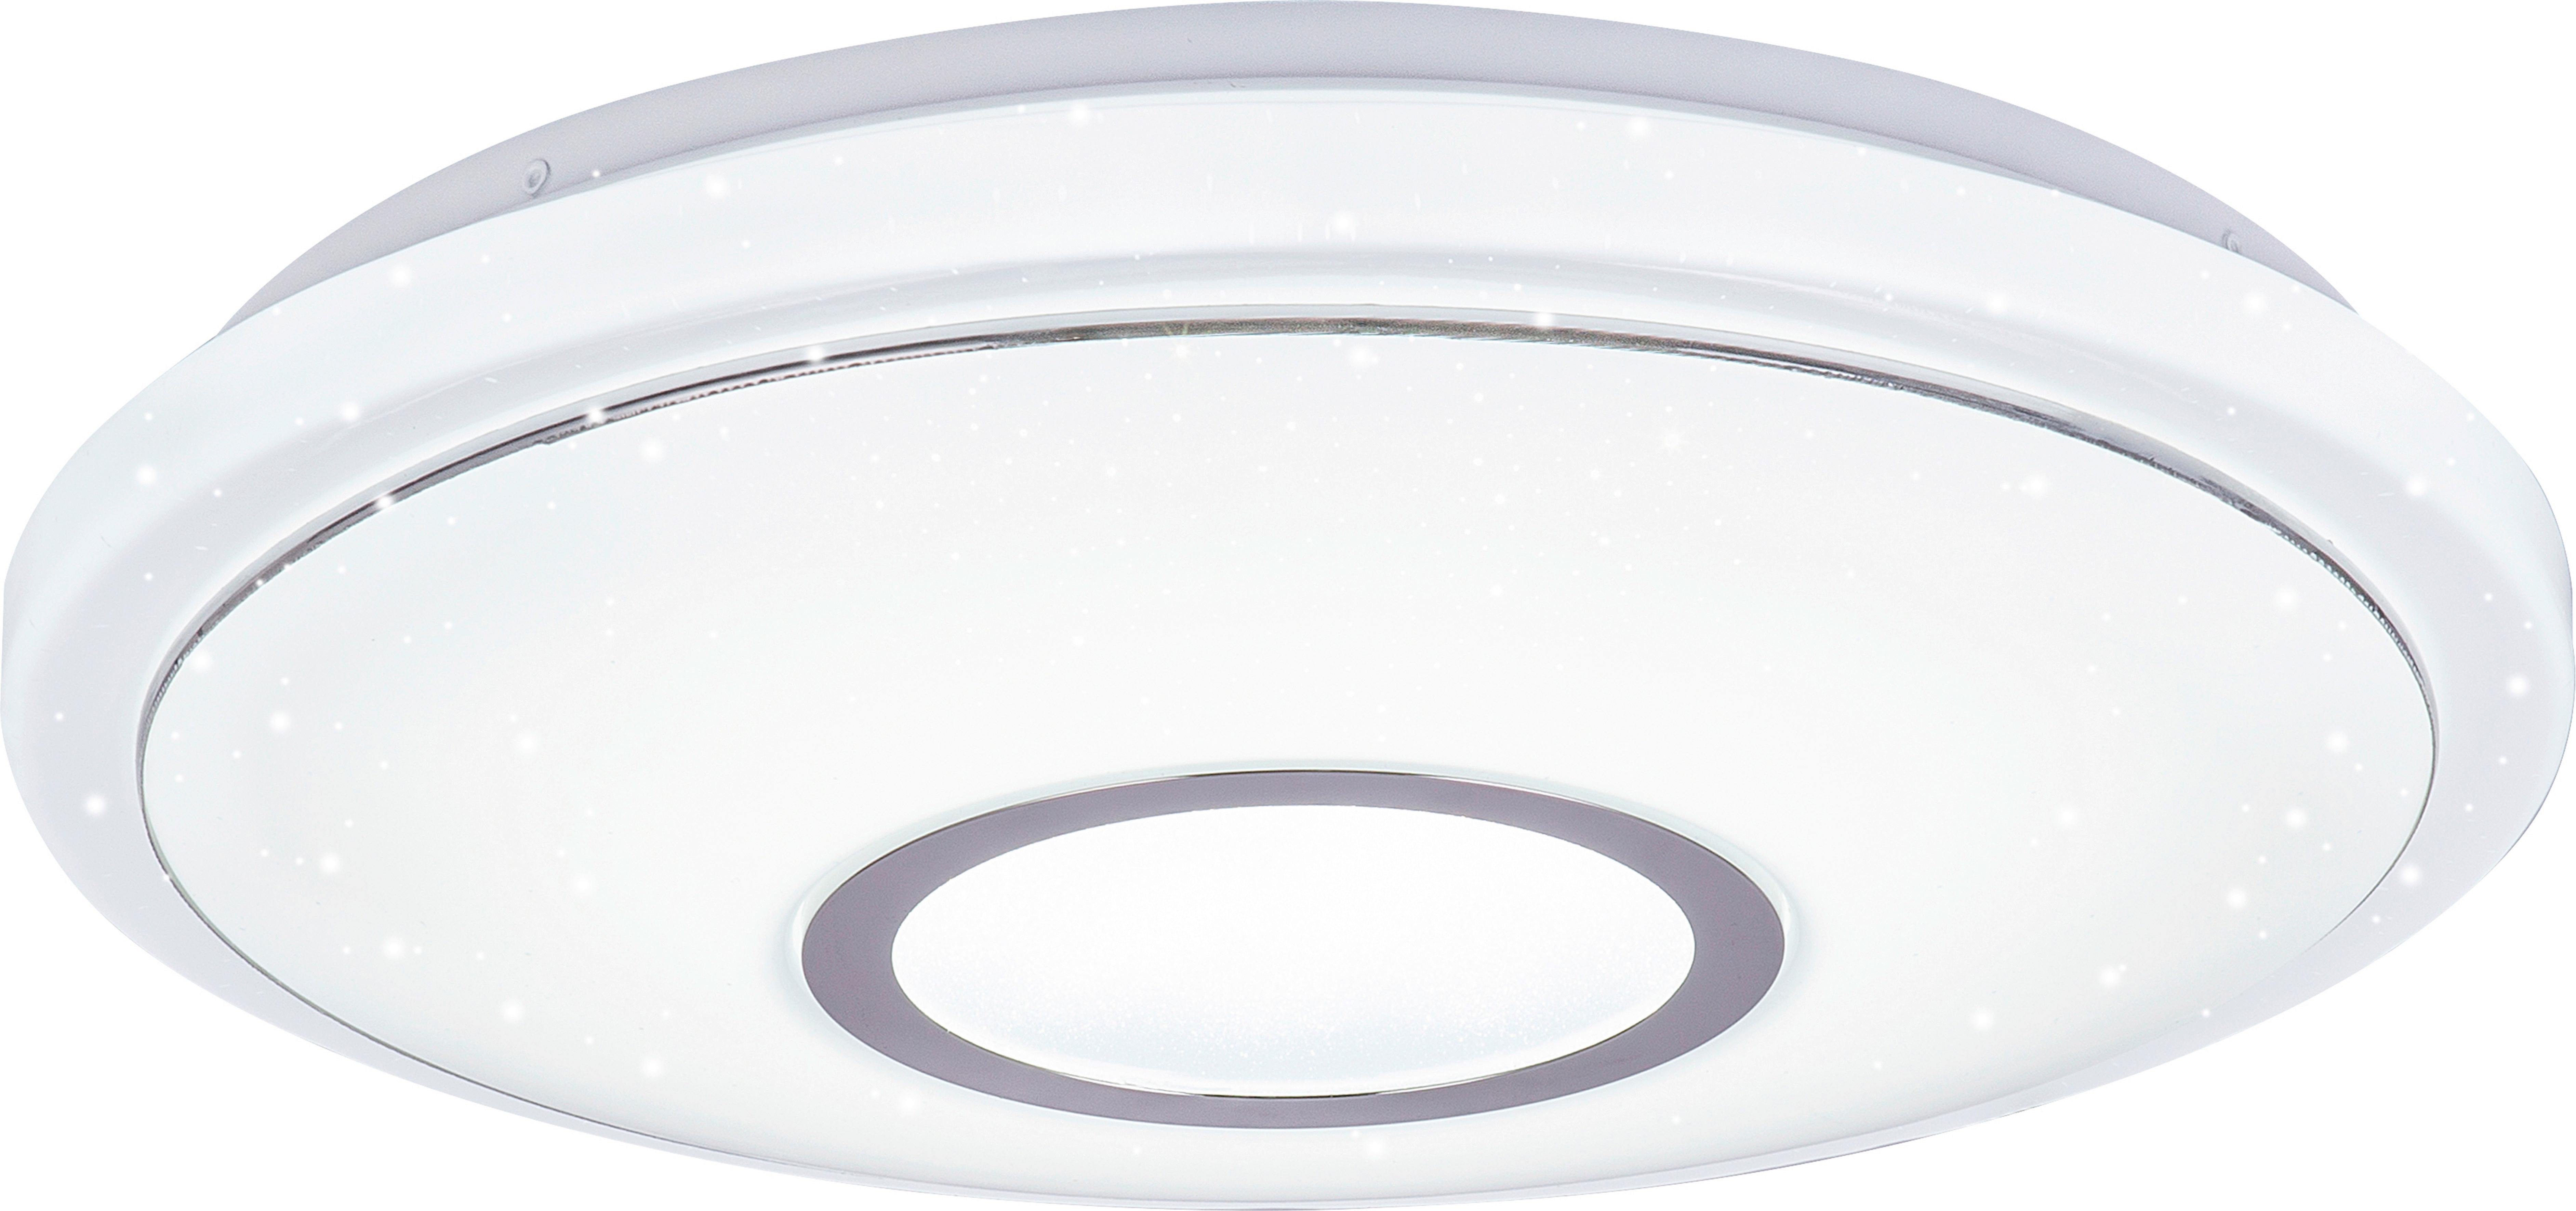 LED-Deckenleuchte Ross max. 16 Watt - Weiß, KONVENTIONELL, Kunststoff/Metall (40/9cm) - Premium Living